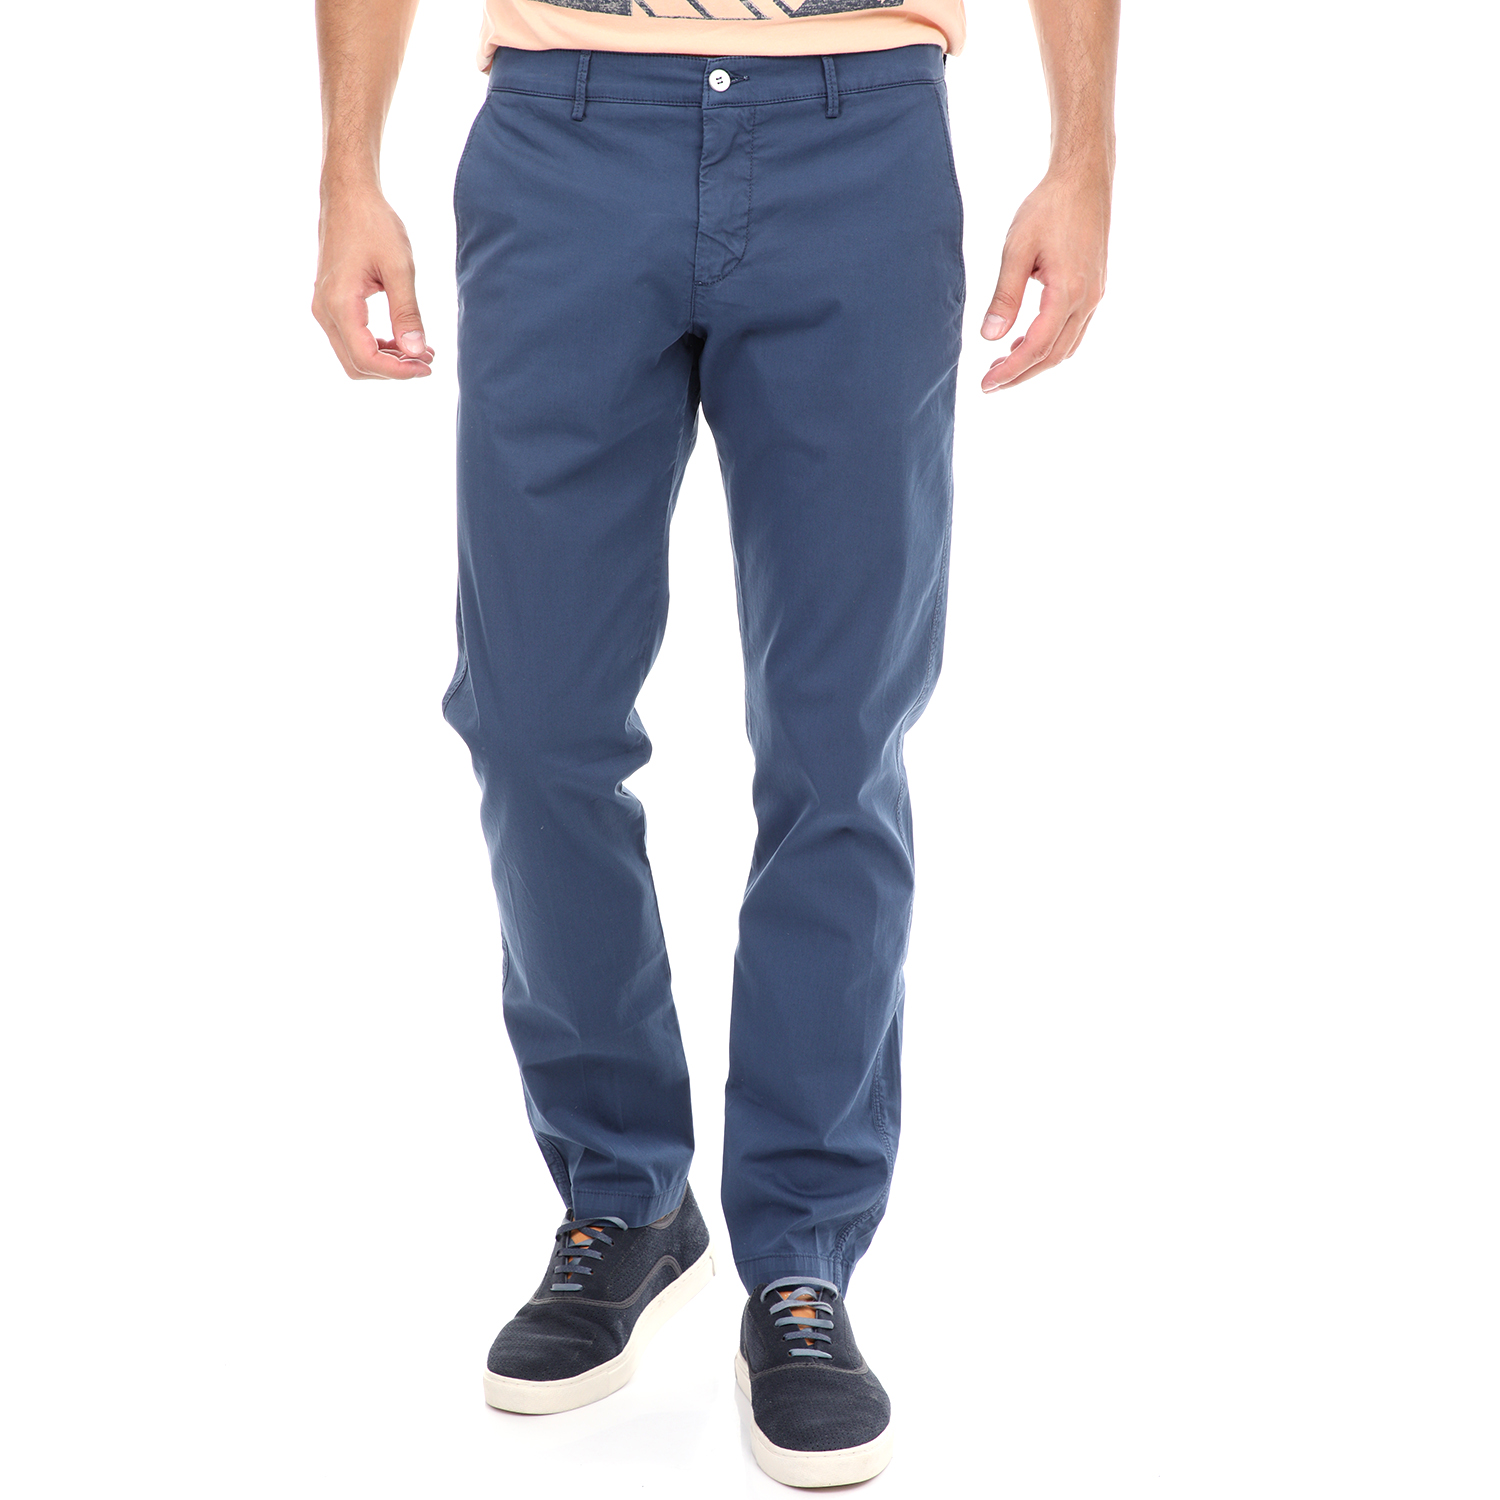 Ανδρικά/Ρούχα/Παντελόνια/Chinos BROOKSFIELD - Ανδρικό chino παντελόνι BROOKSFIELD μπλε